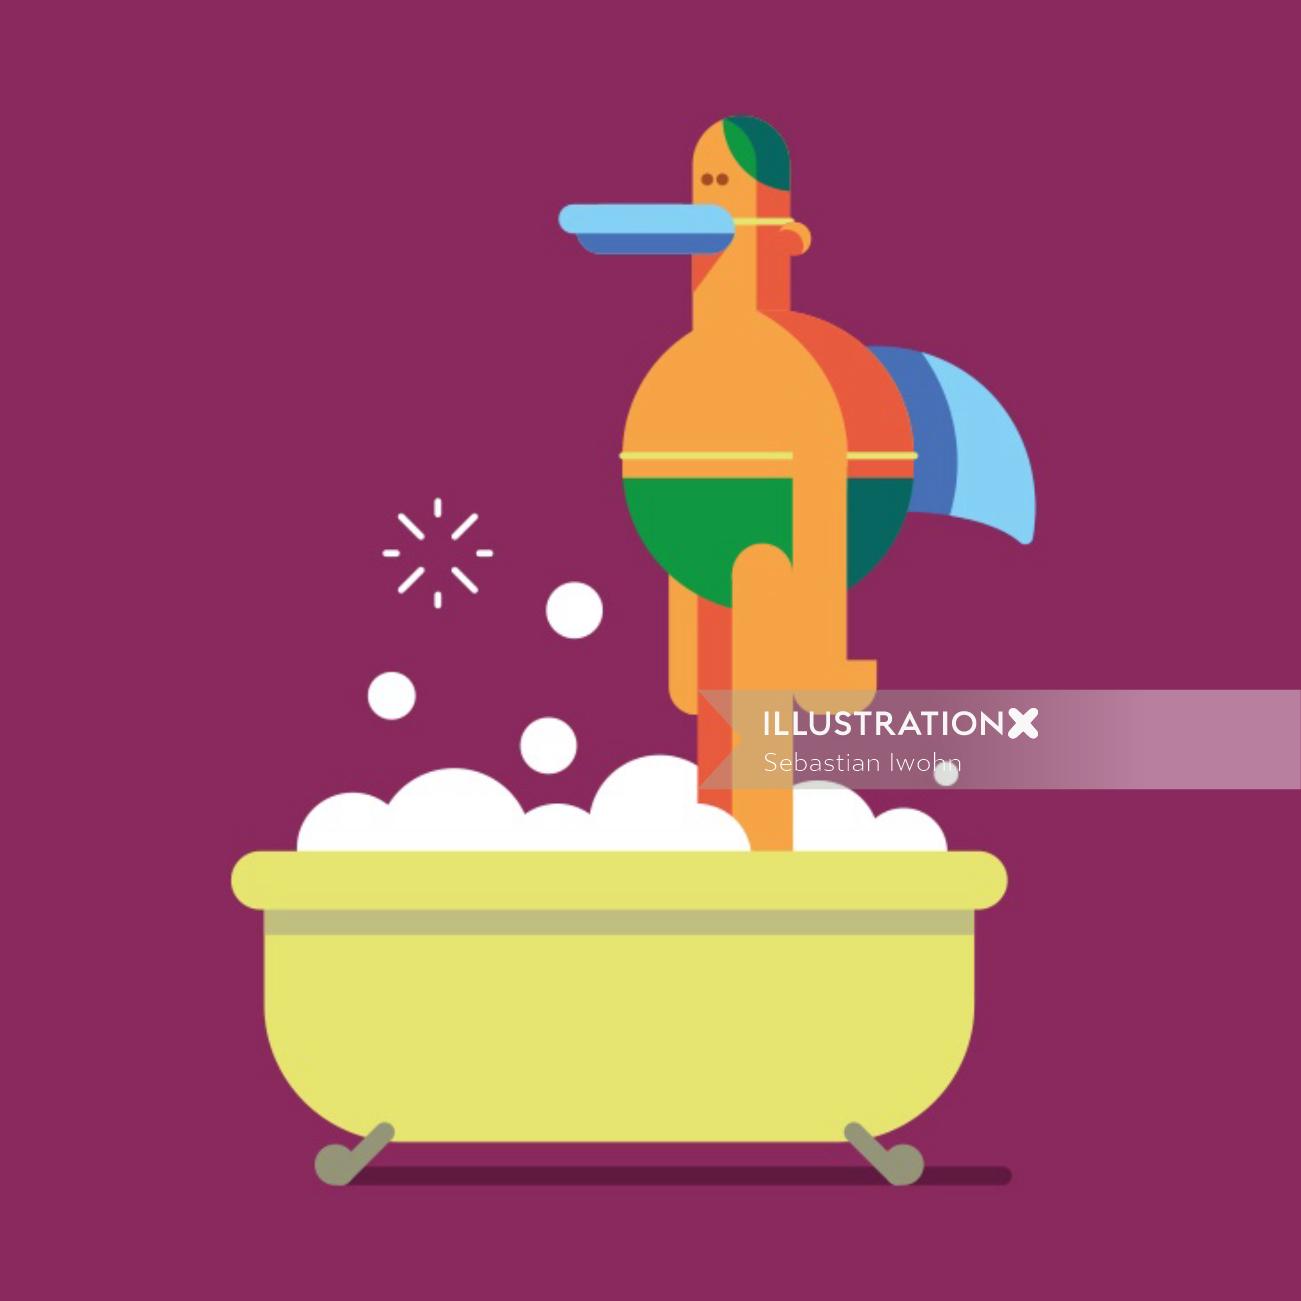 Graphic duck boy in bath tub